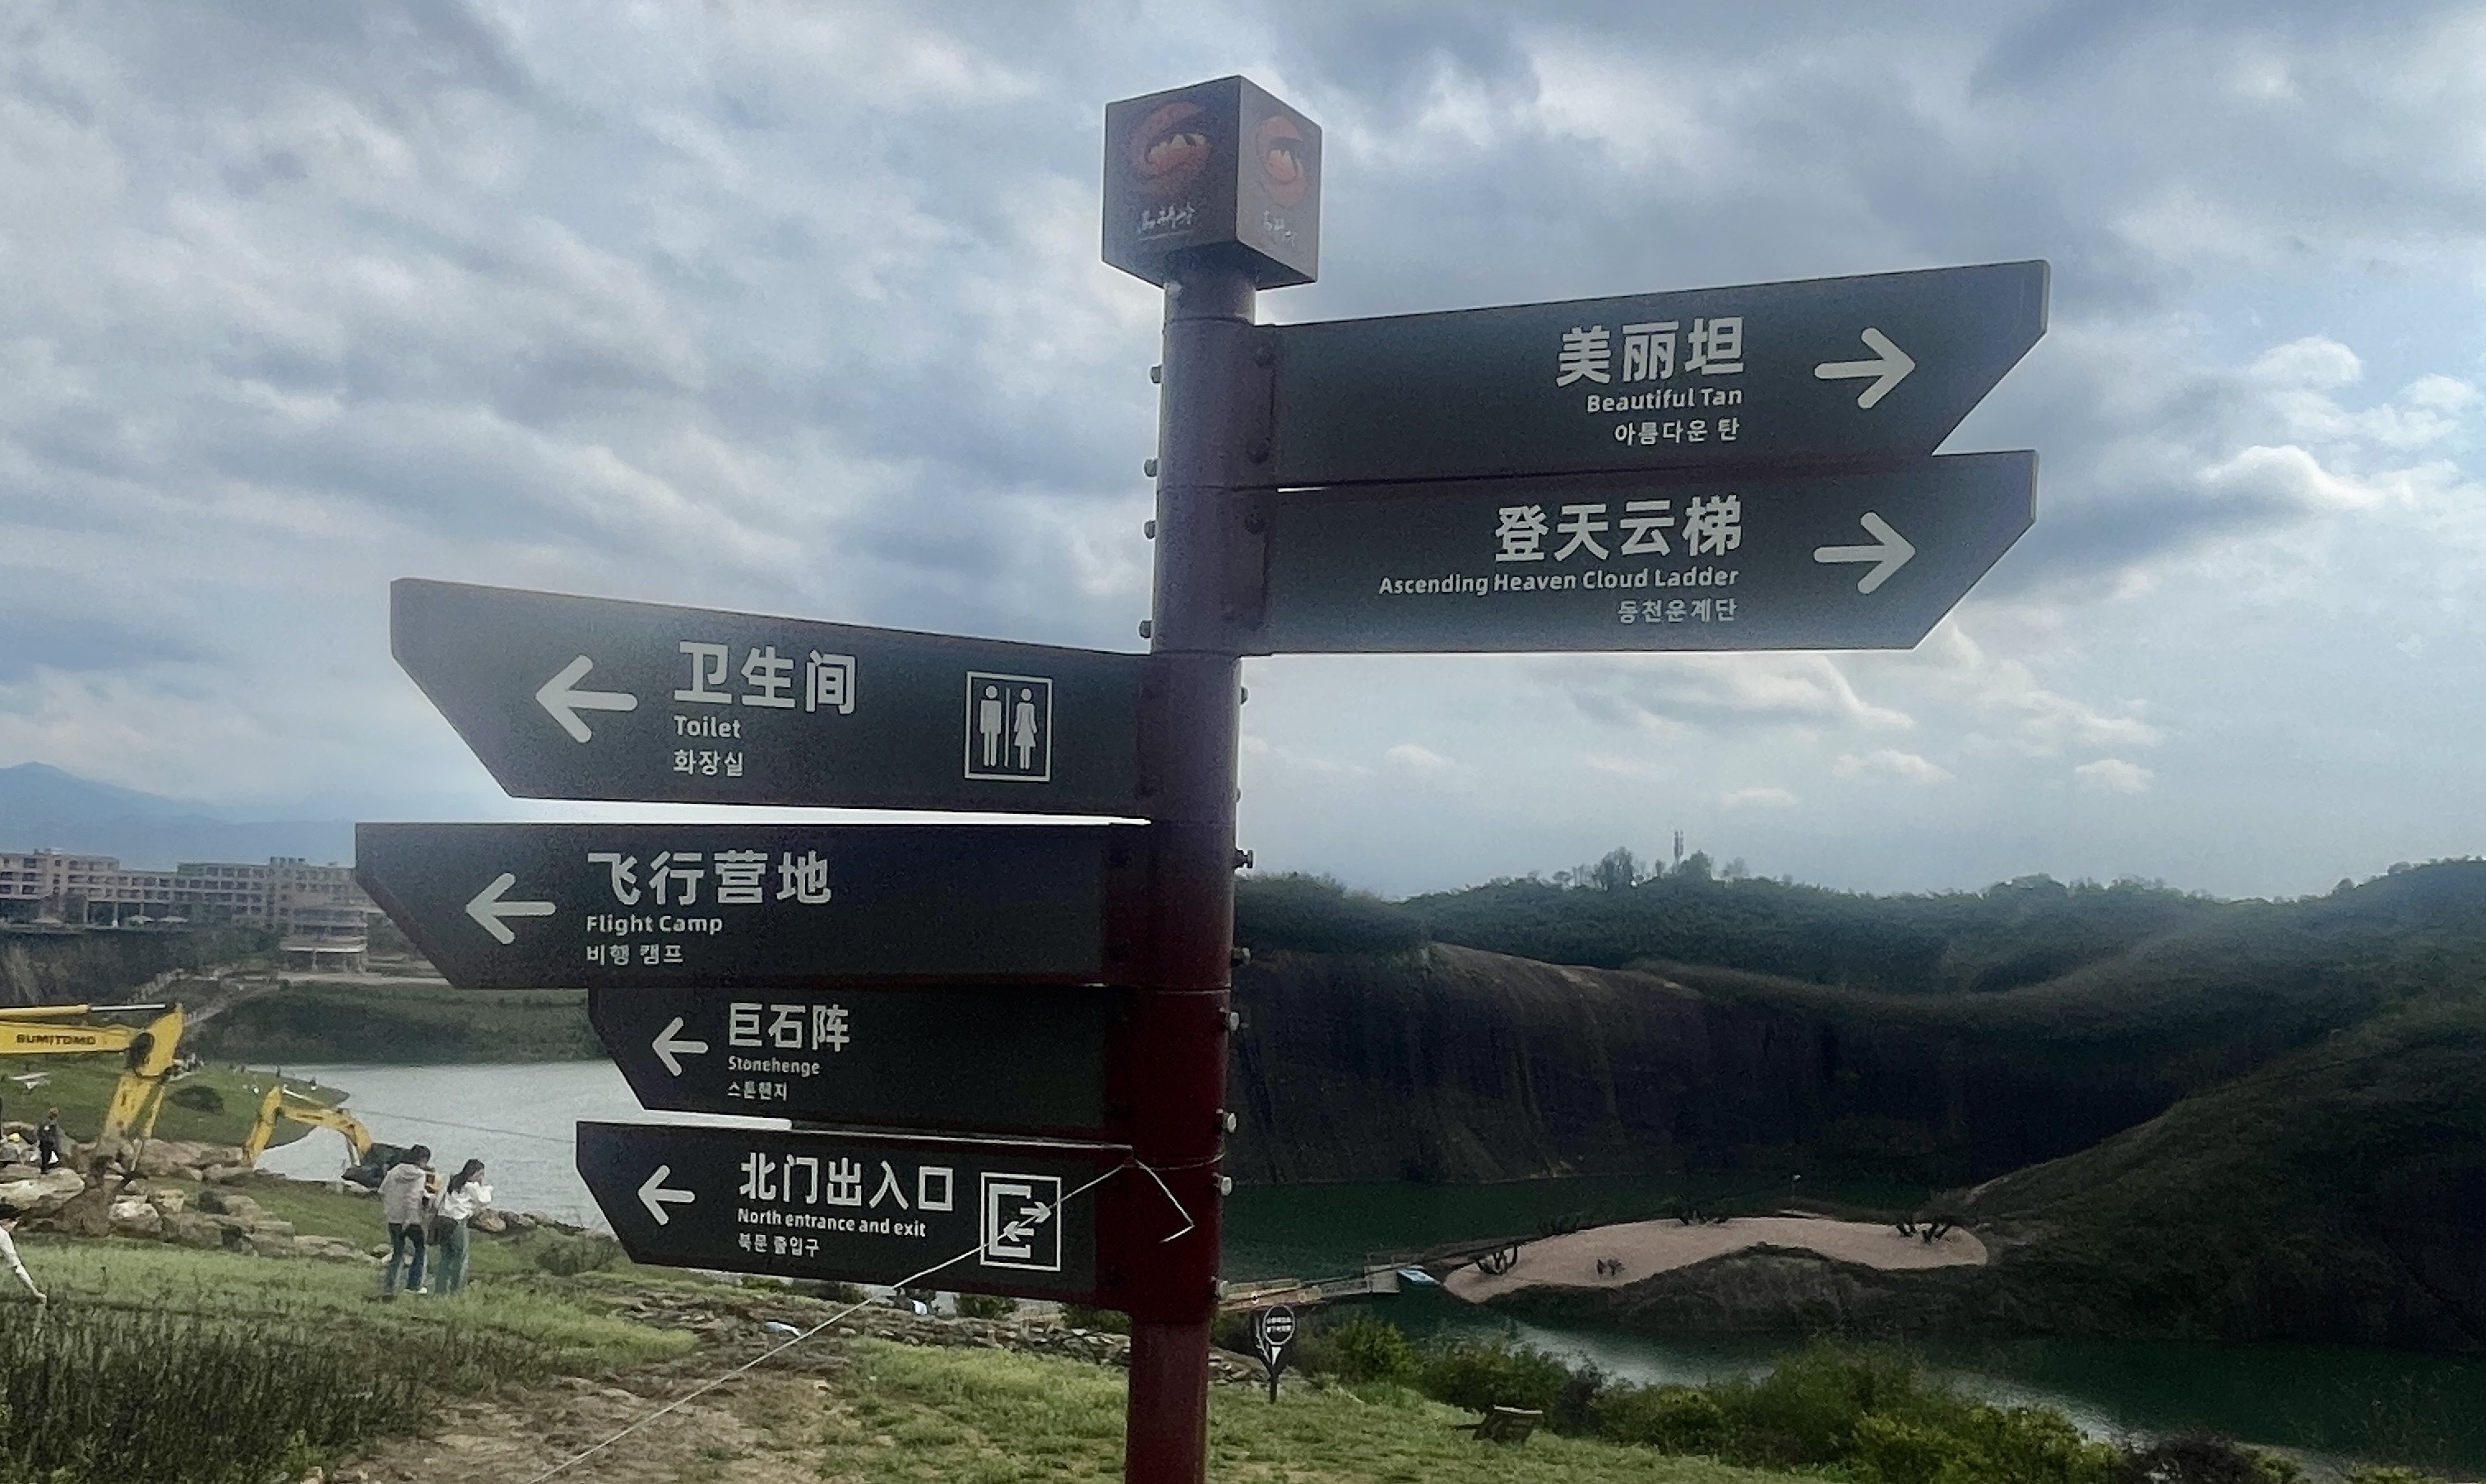 大陸景區指示牌不見日文，大多採用中文、英文、韓文三種版本。 圖/陳素貞攝